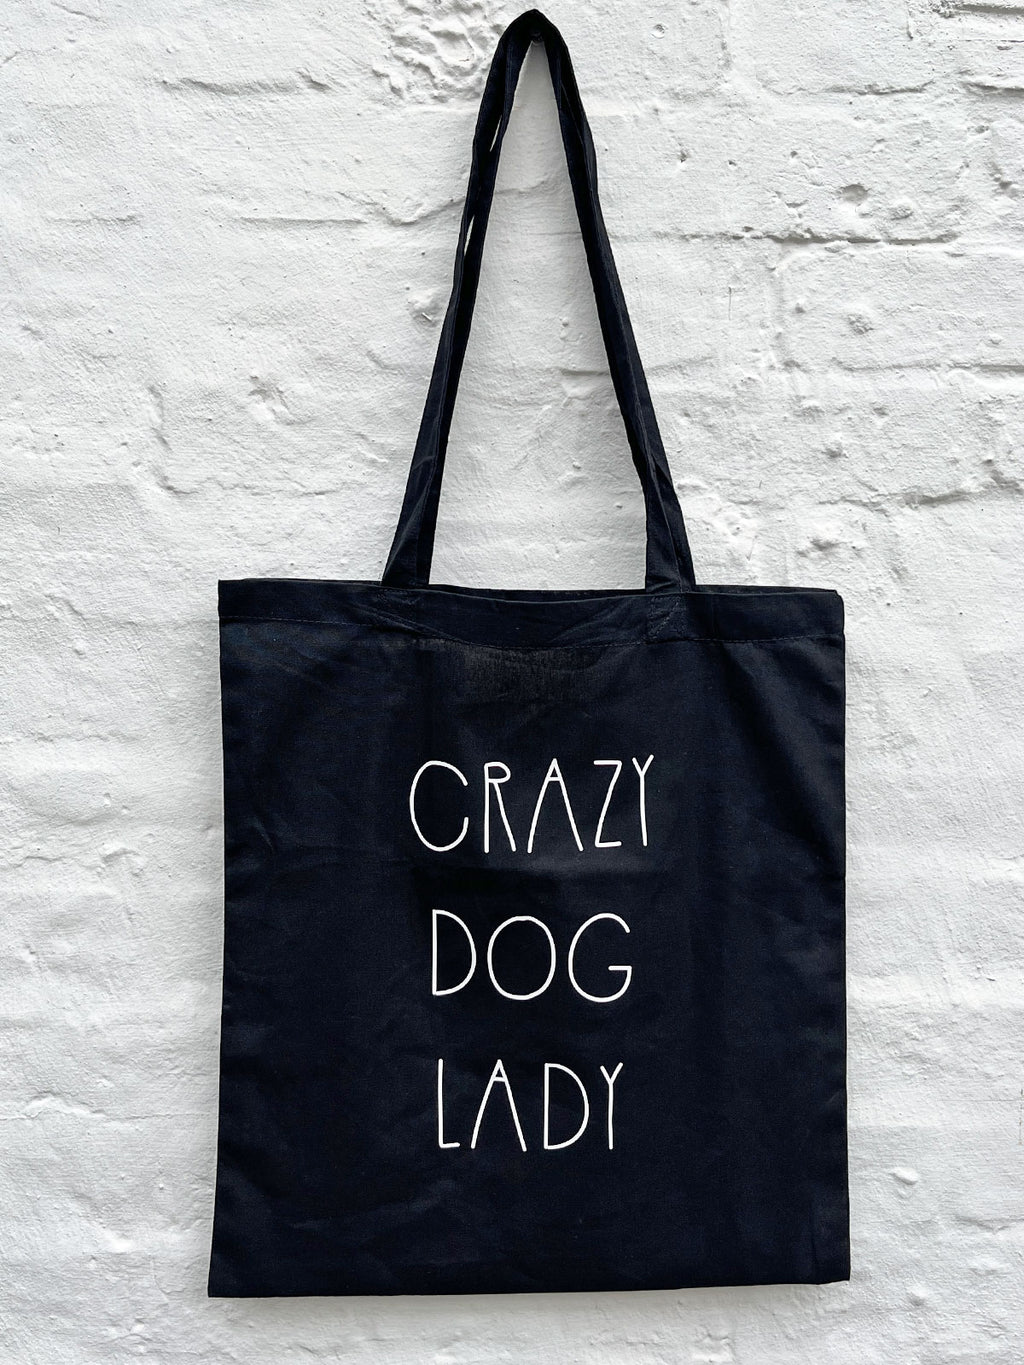 Crazy Dog Lady - Tote Bag - Black